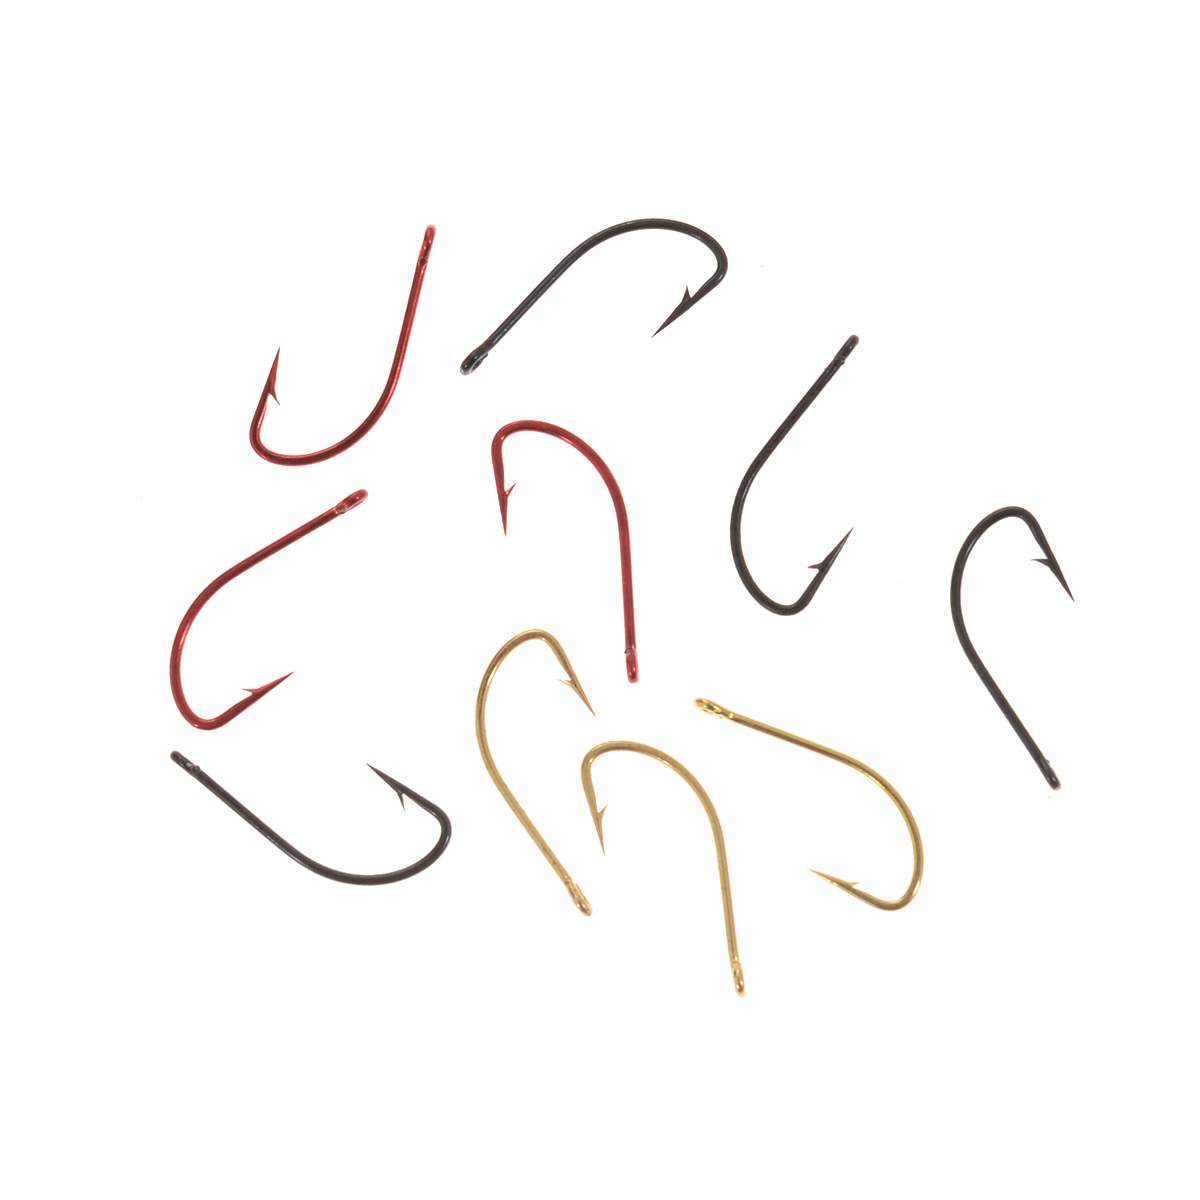 Крючки рыболовные Cobra Mix, цвет: черный, красный, золотой, размер 8, 10 шт